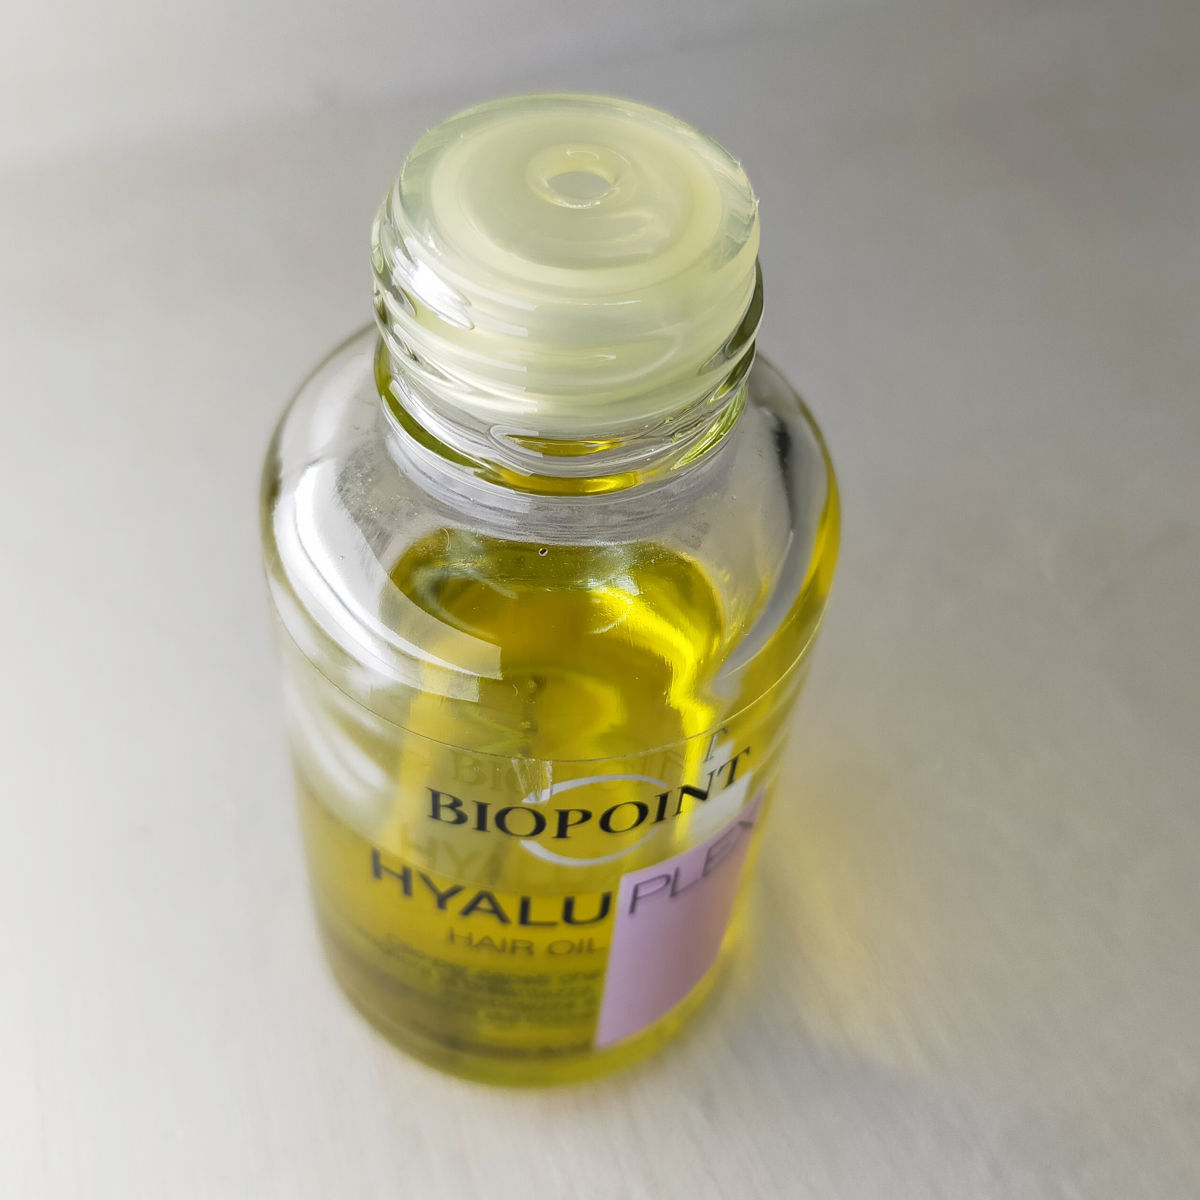 Biopoint olio per capelli linea Hyaluplex 